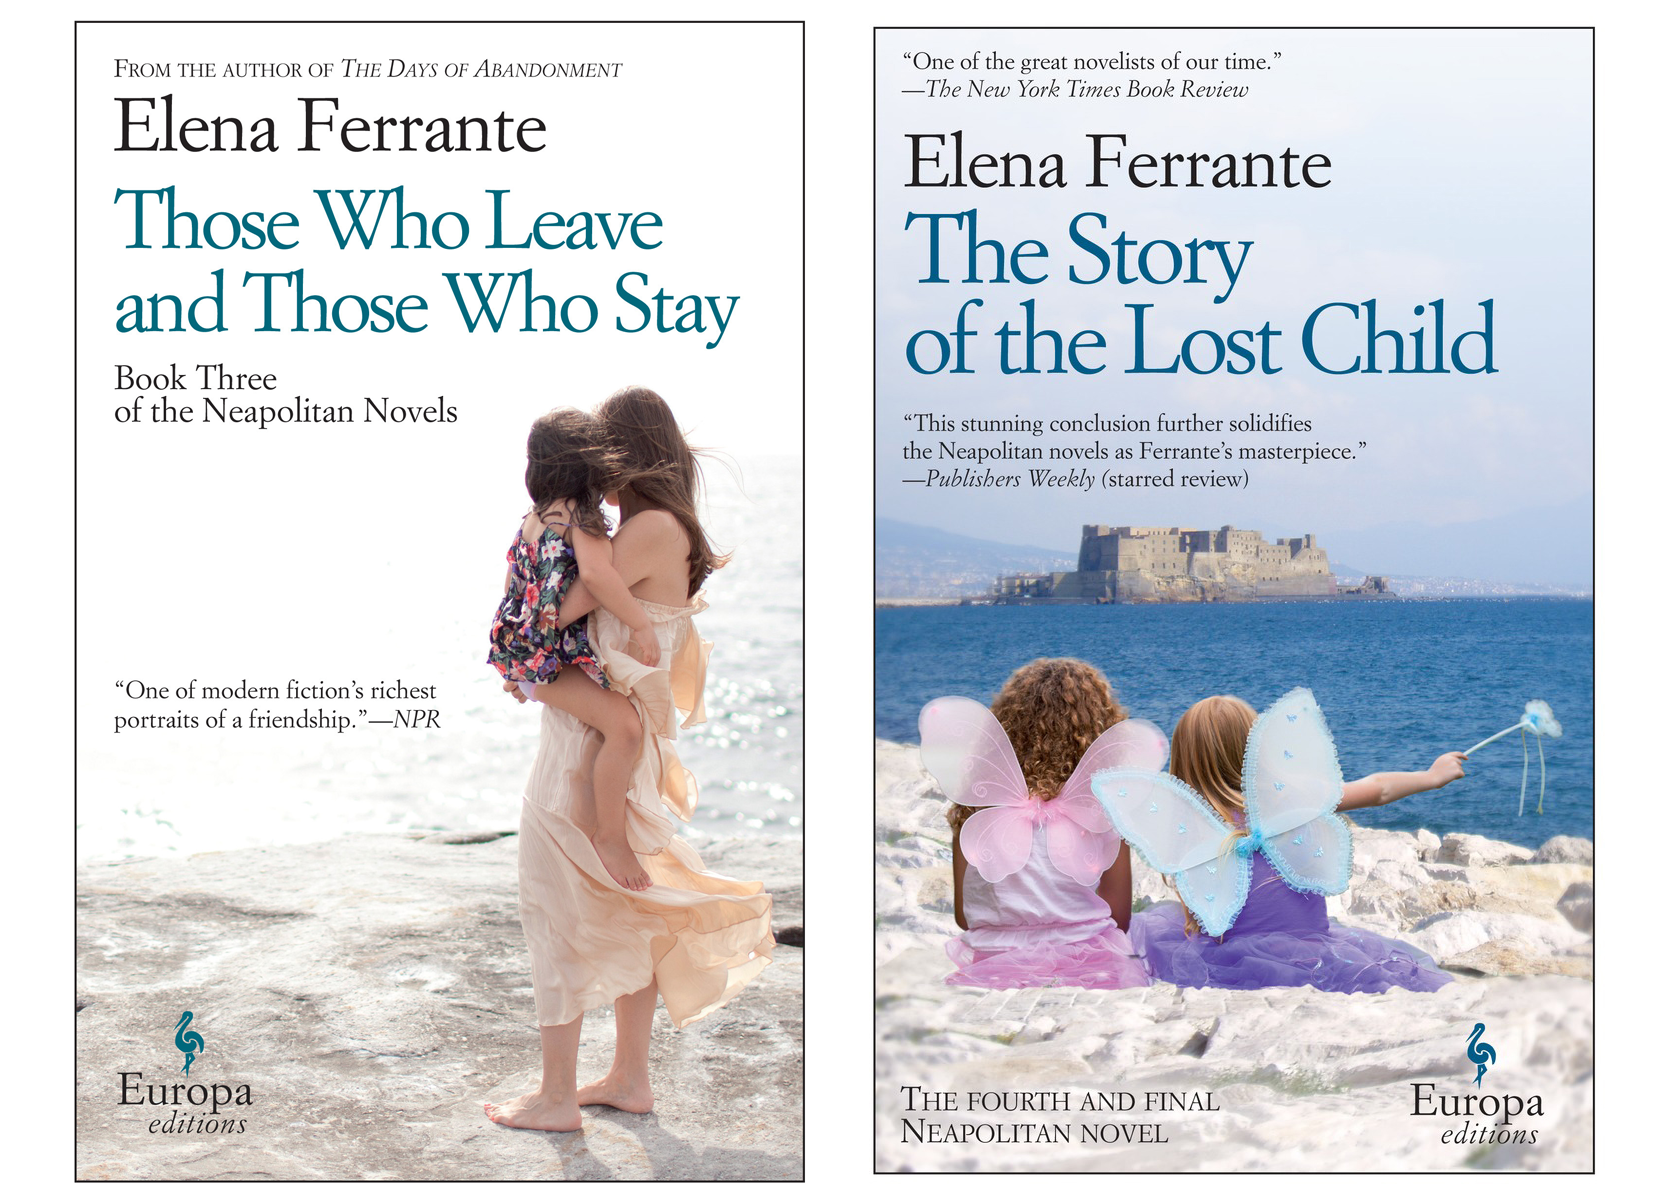 The final two books in Elena Ferrante's Neapolitan series